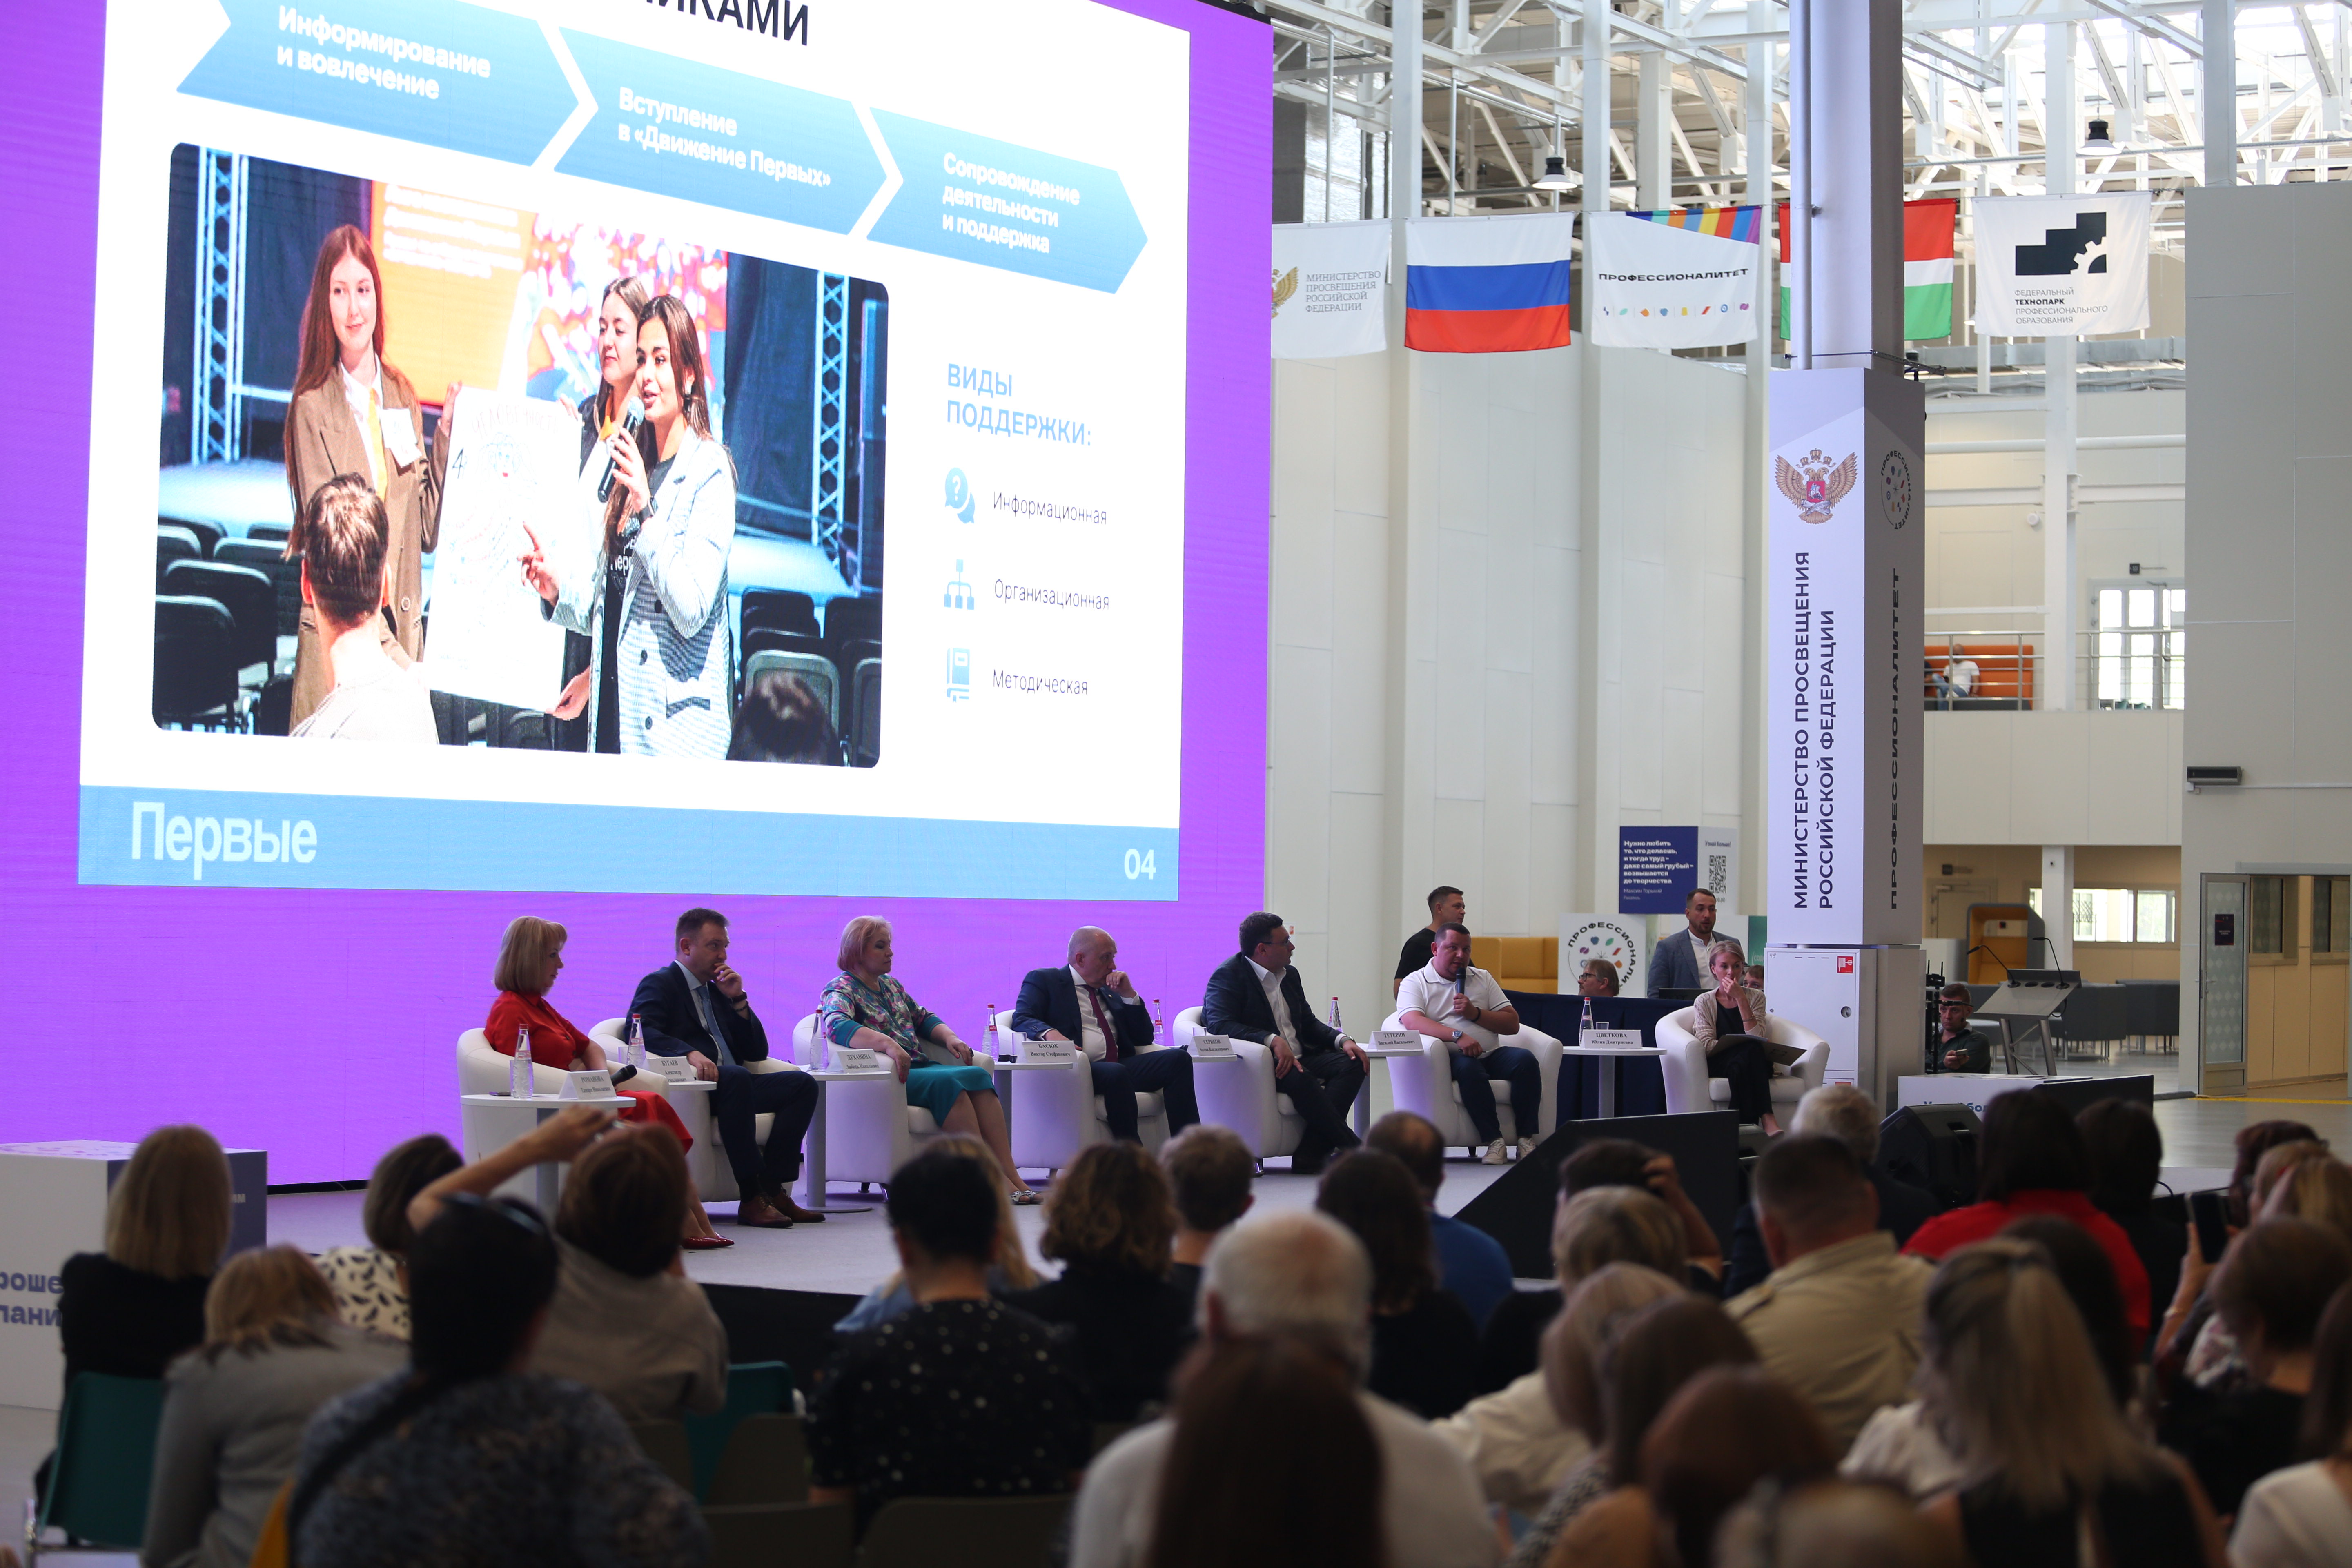 Всероссийский съезд наставников начал работу в технопарке Калуги